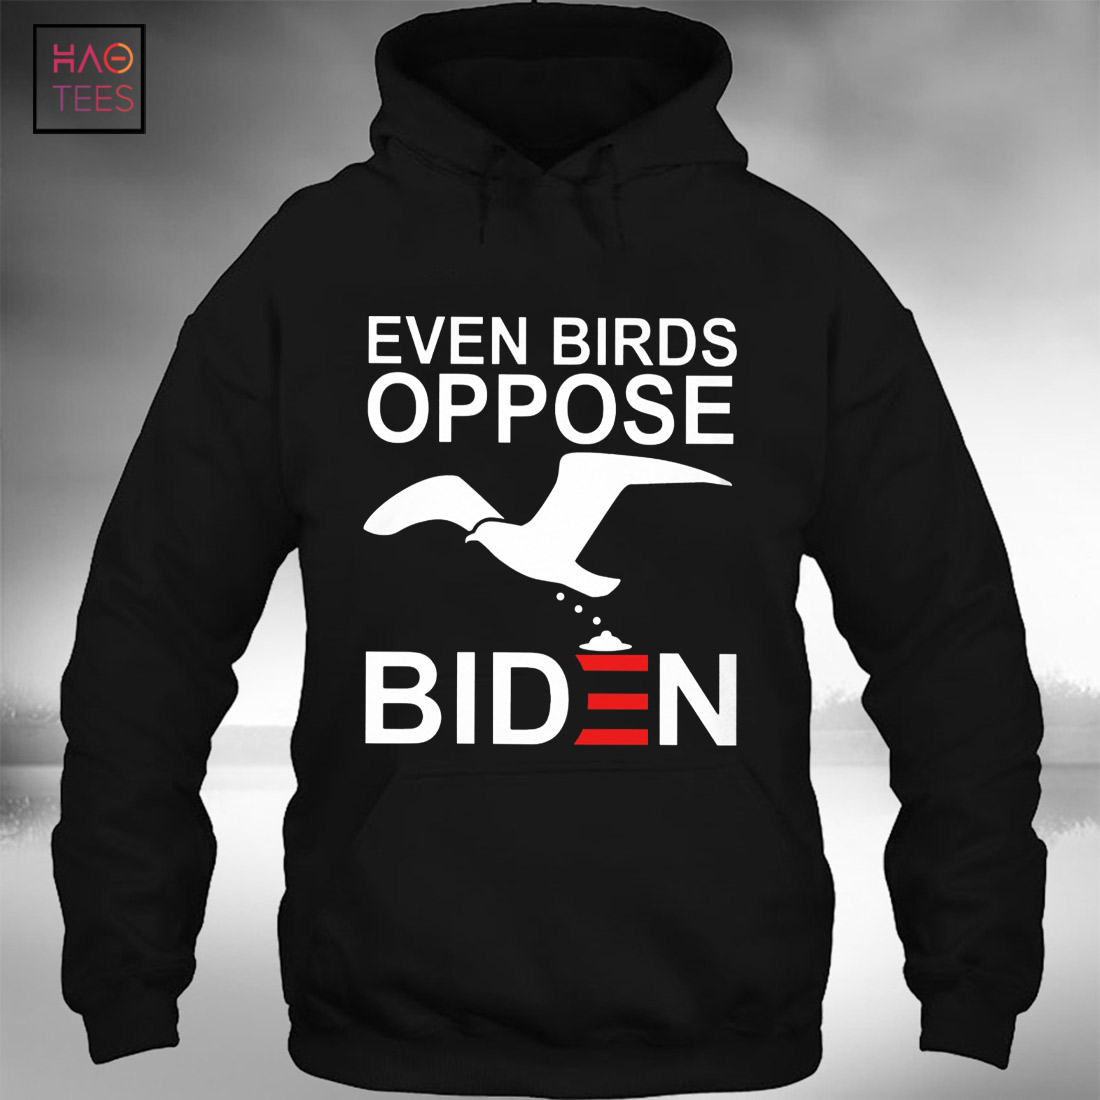 Even Birds Oppose Biden T-shirt Classic